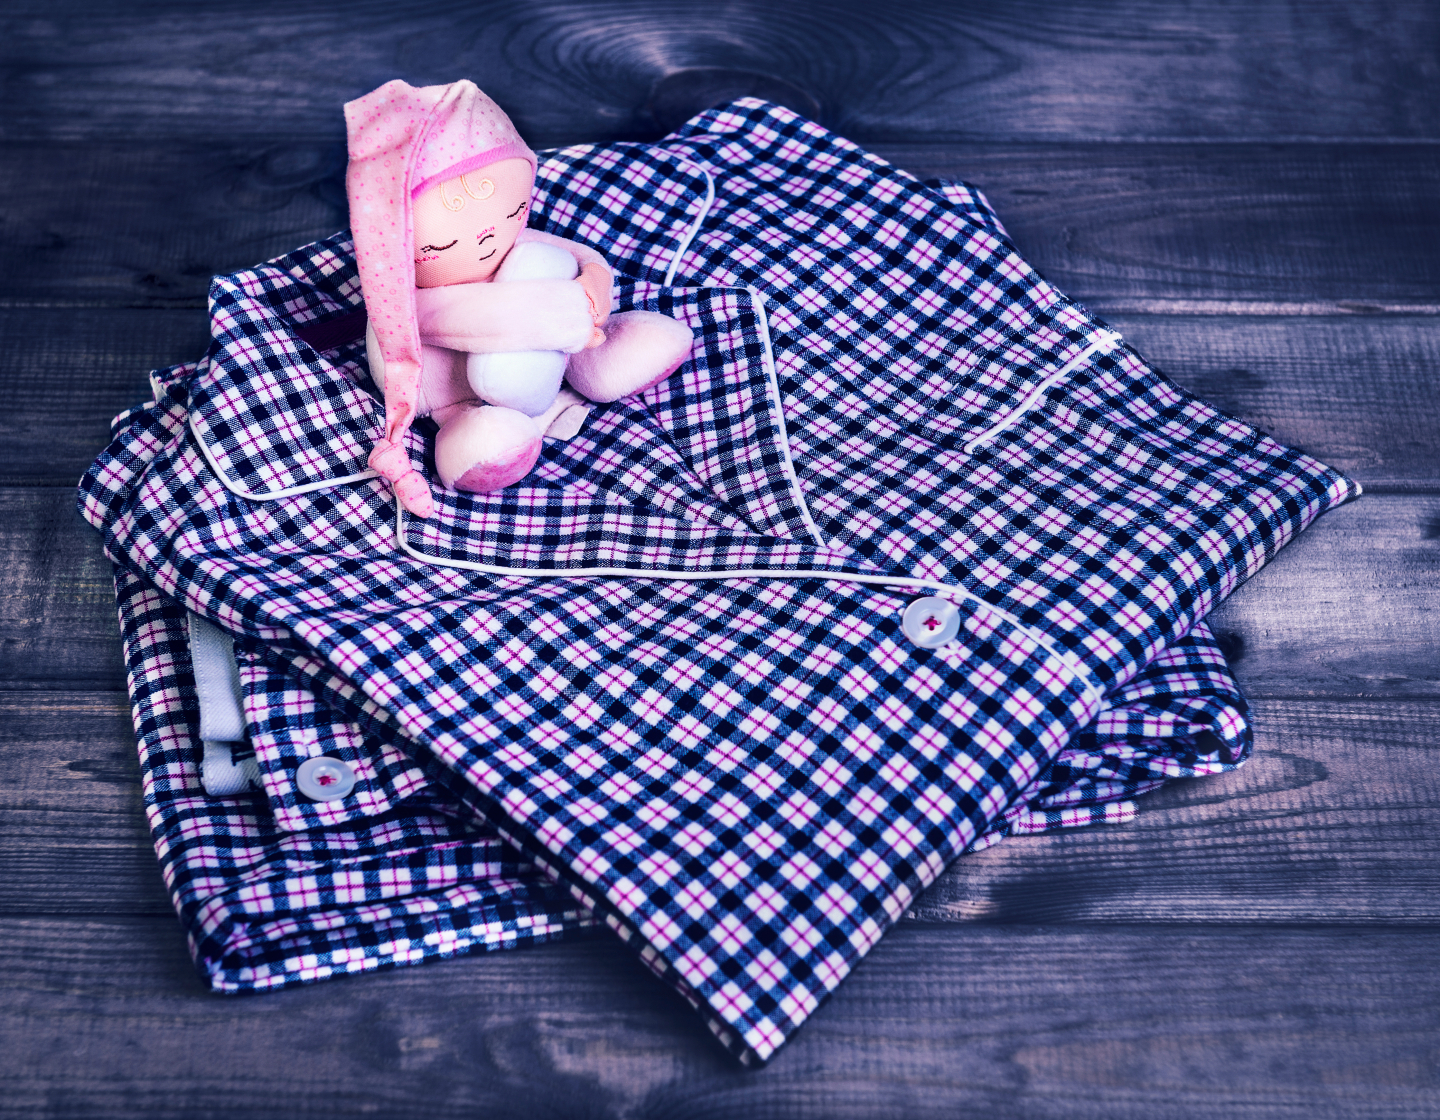 「冬場のパジャマ」洗濯頻度はどれくらい？夏は毎日洗う派が最多…に対して、冬は若干異なる結果に